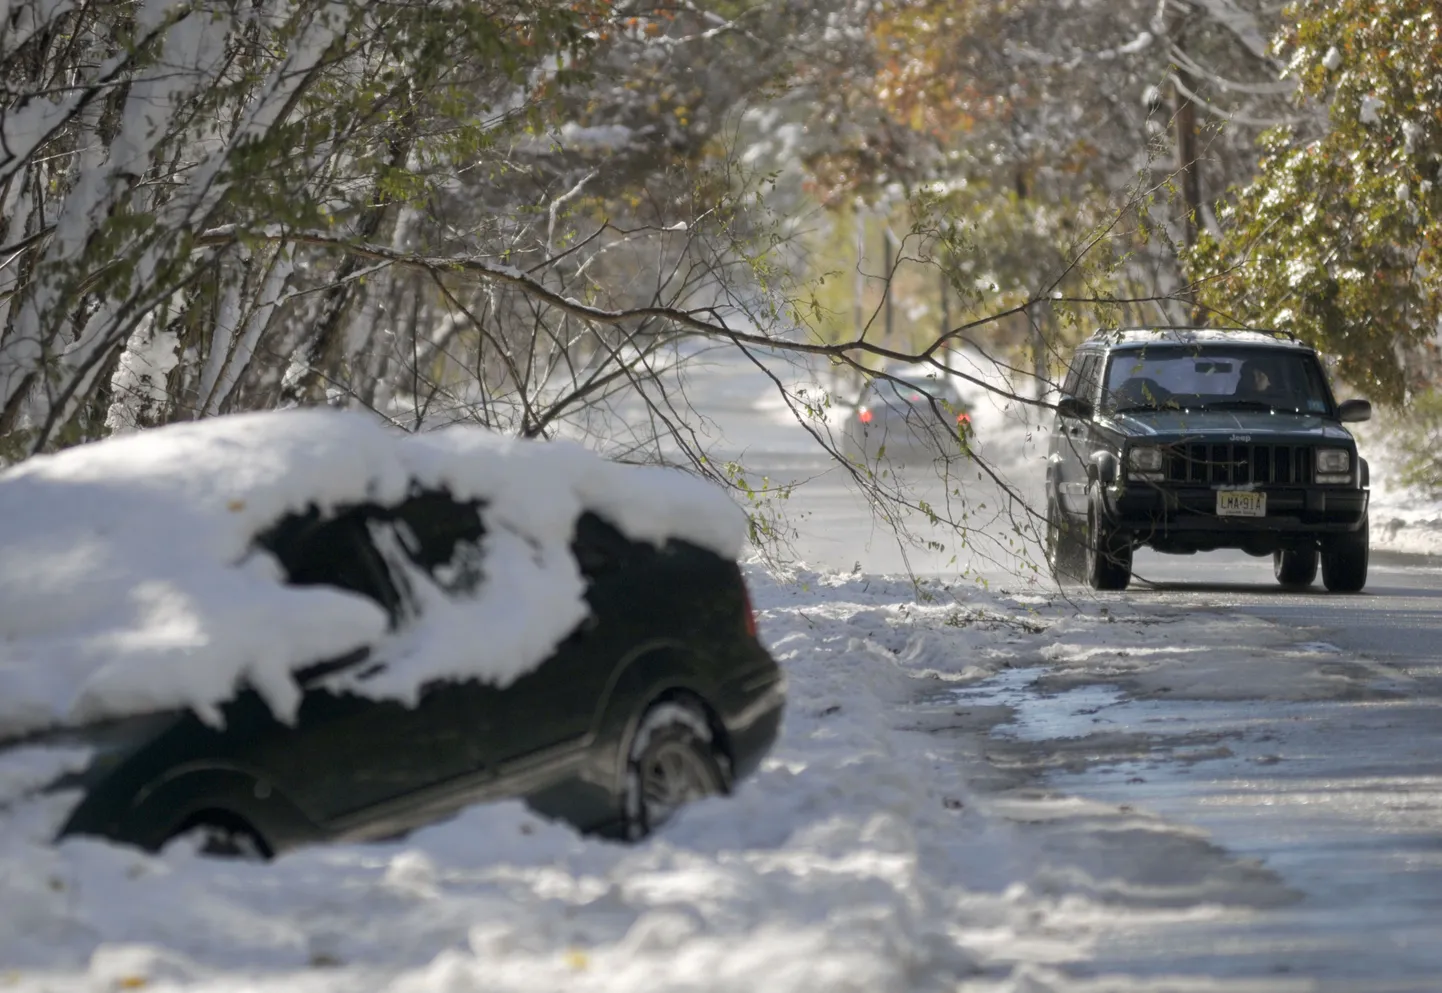 USA idarannikut tabanud lumetormis hukkus viis inimest